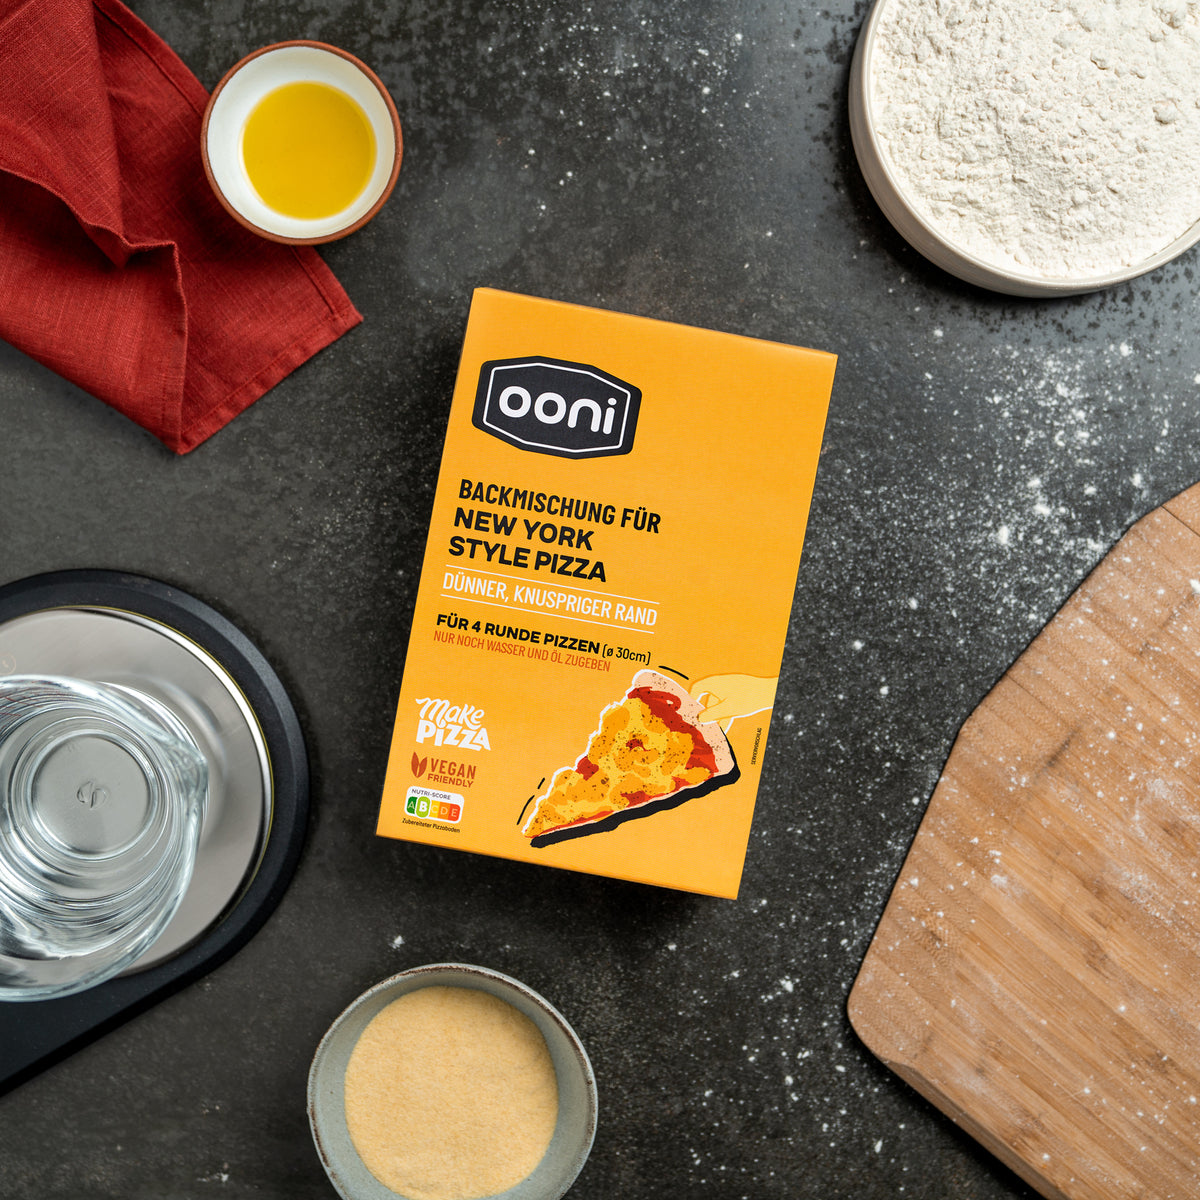 Ooni Pizza-Backmischungen